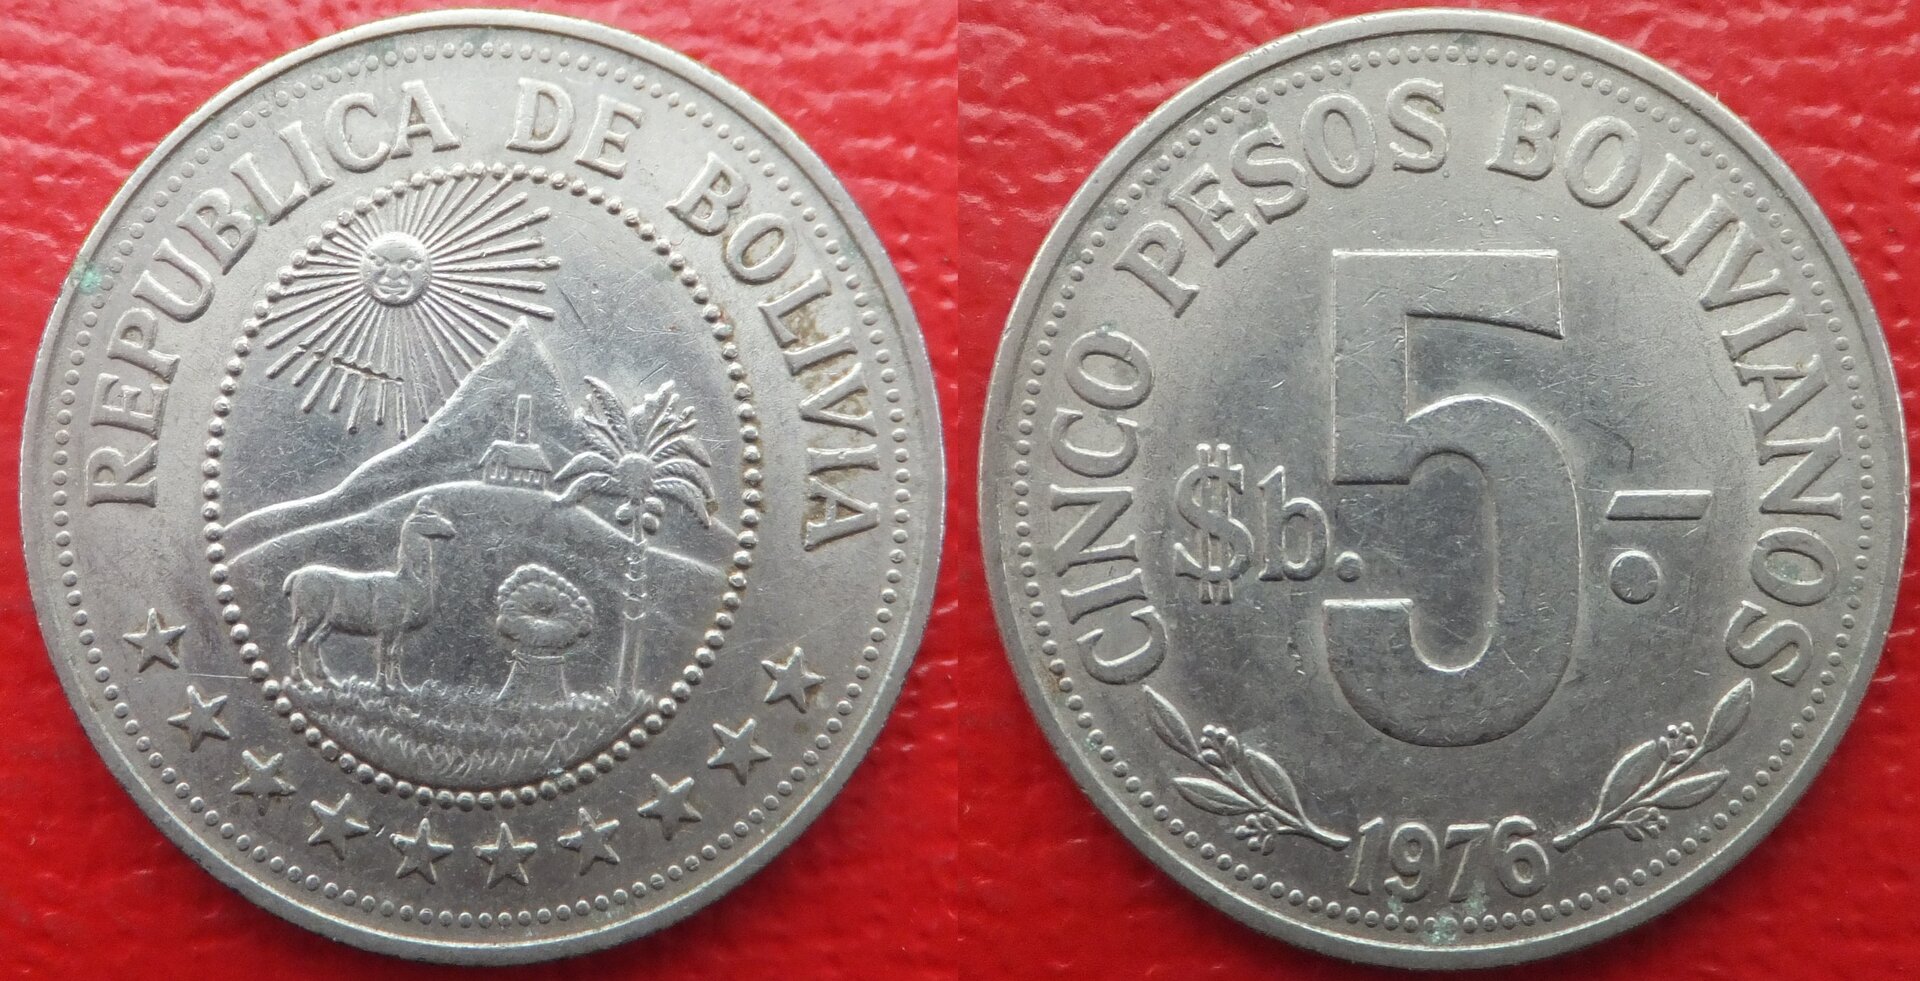 Bolivia 5 pesos 1976 (3).jpg